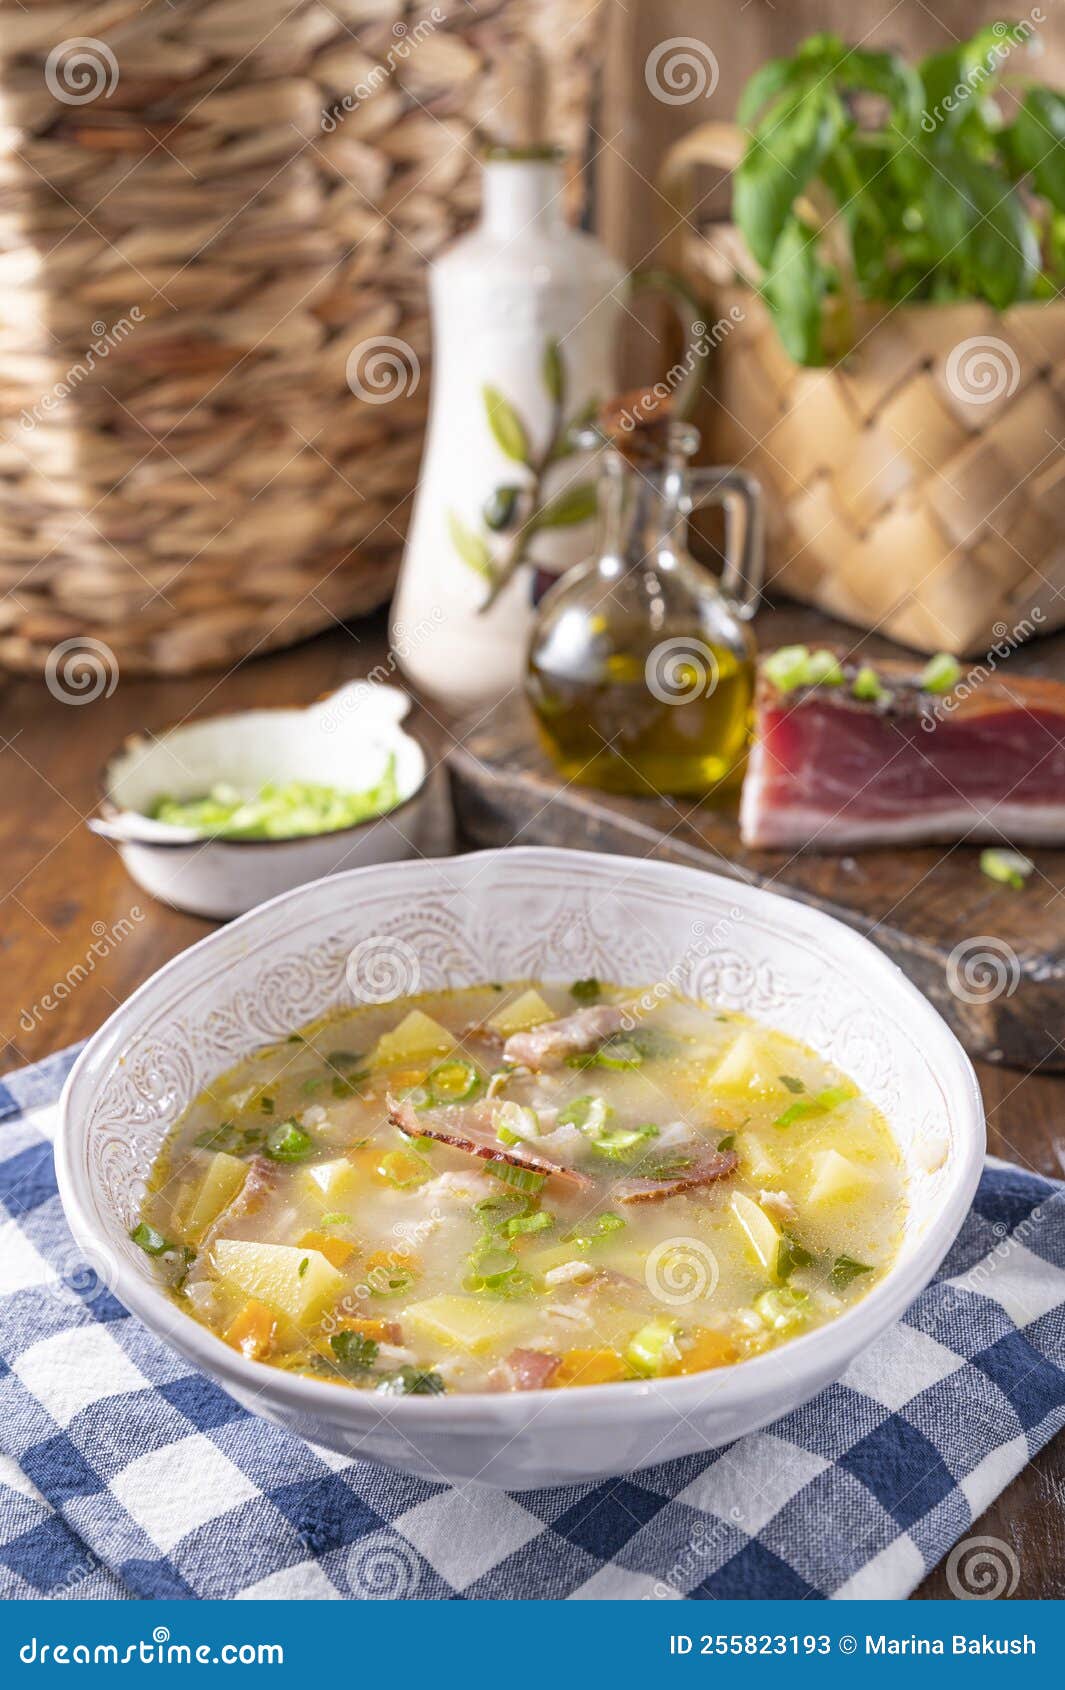 barley soup, zuppa di orzo. zuppa tradizionale con pancetta e orzo nel nord italia, trento. cucina contadina, tipica